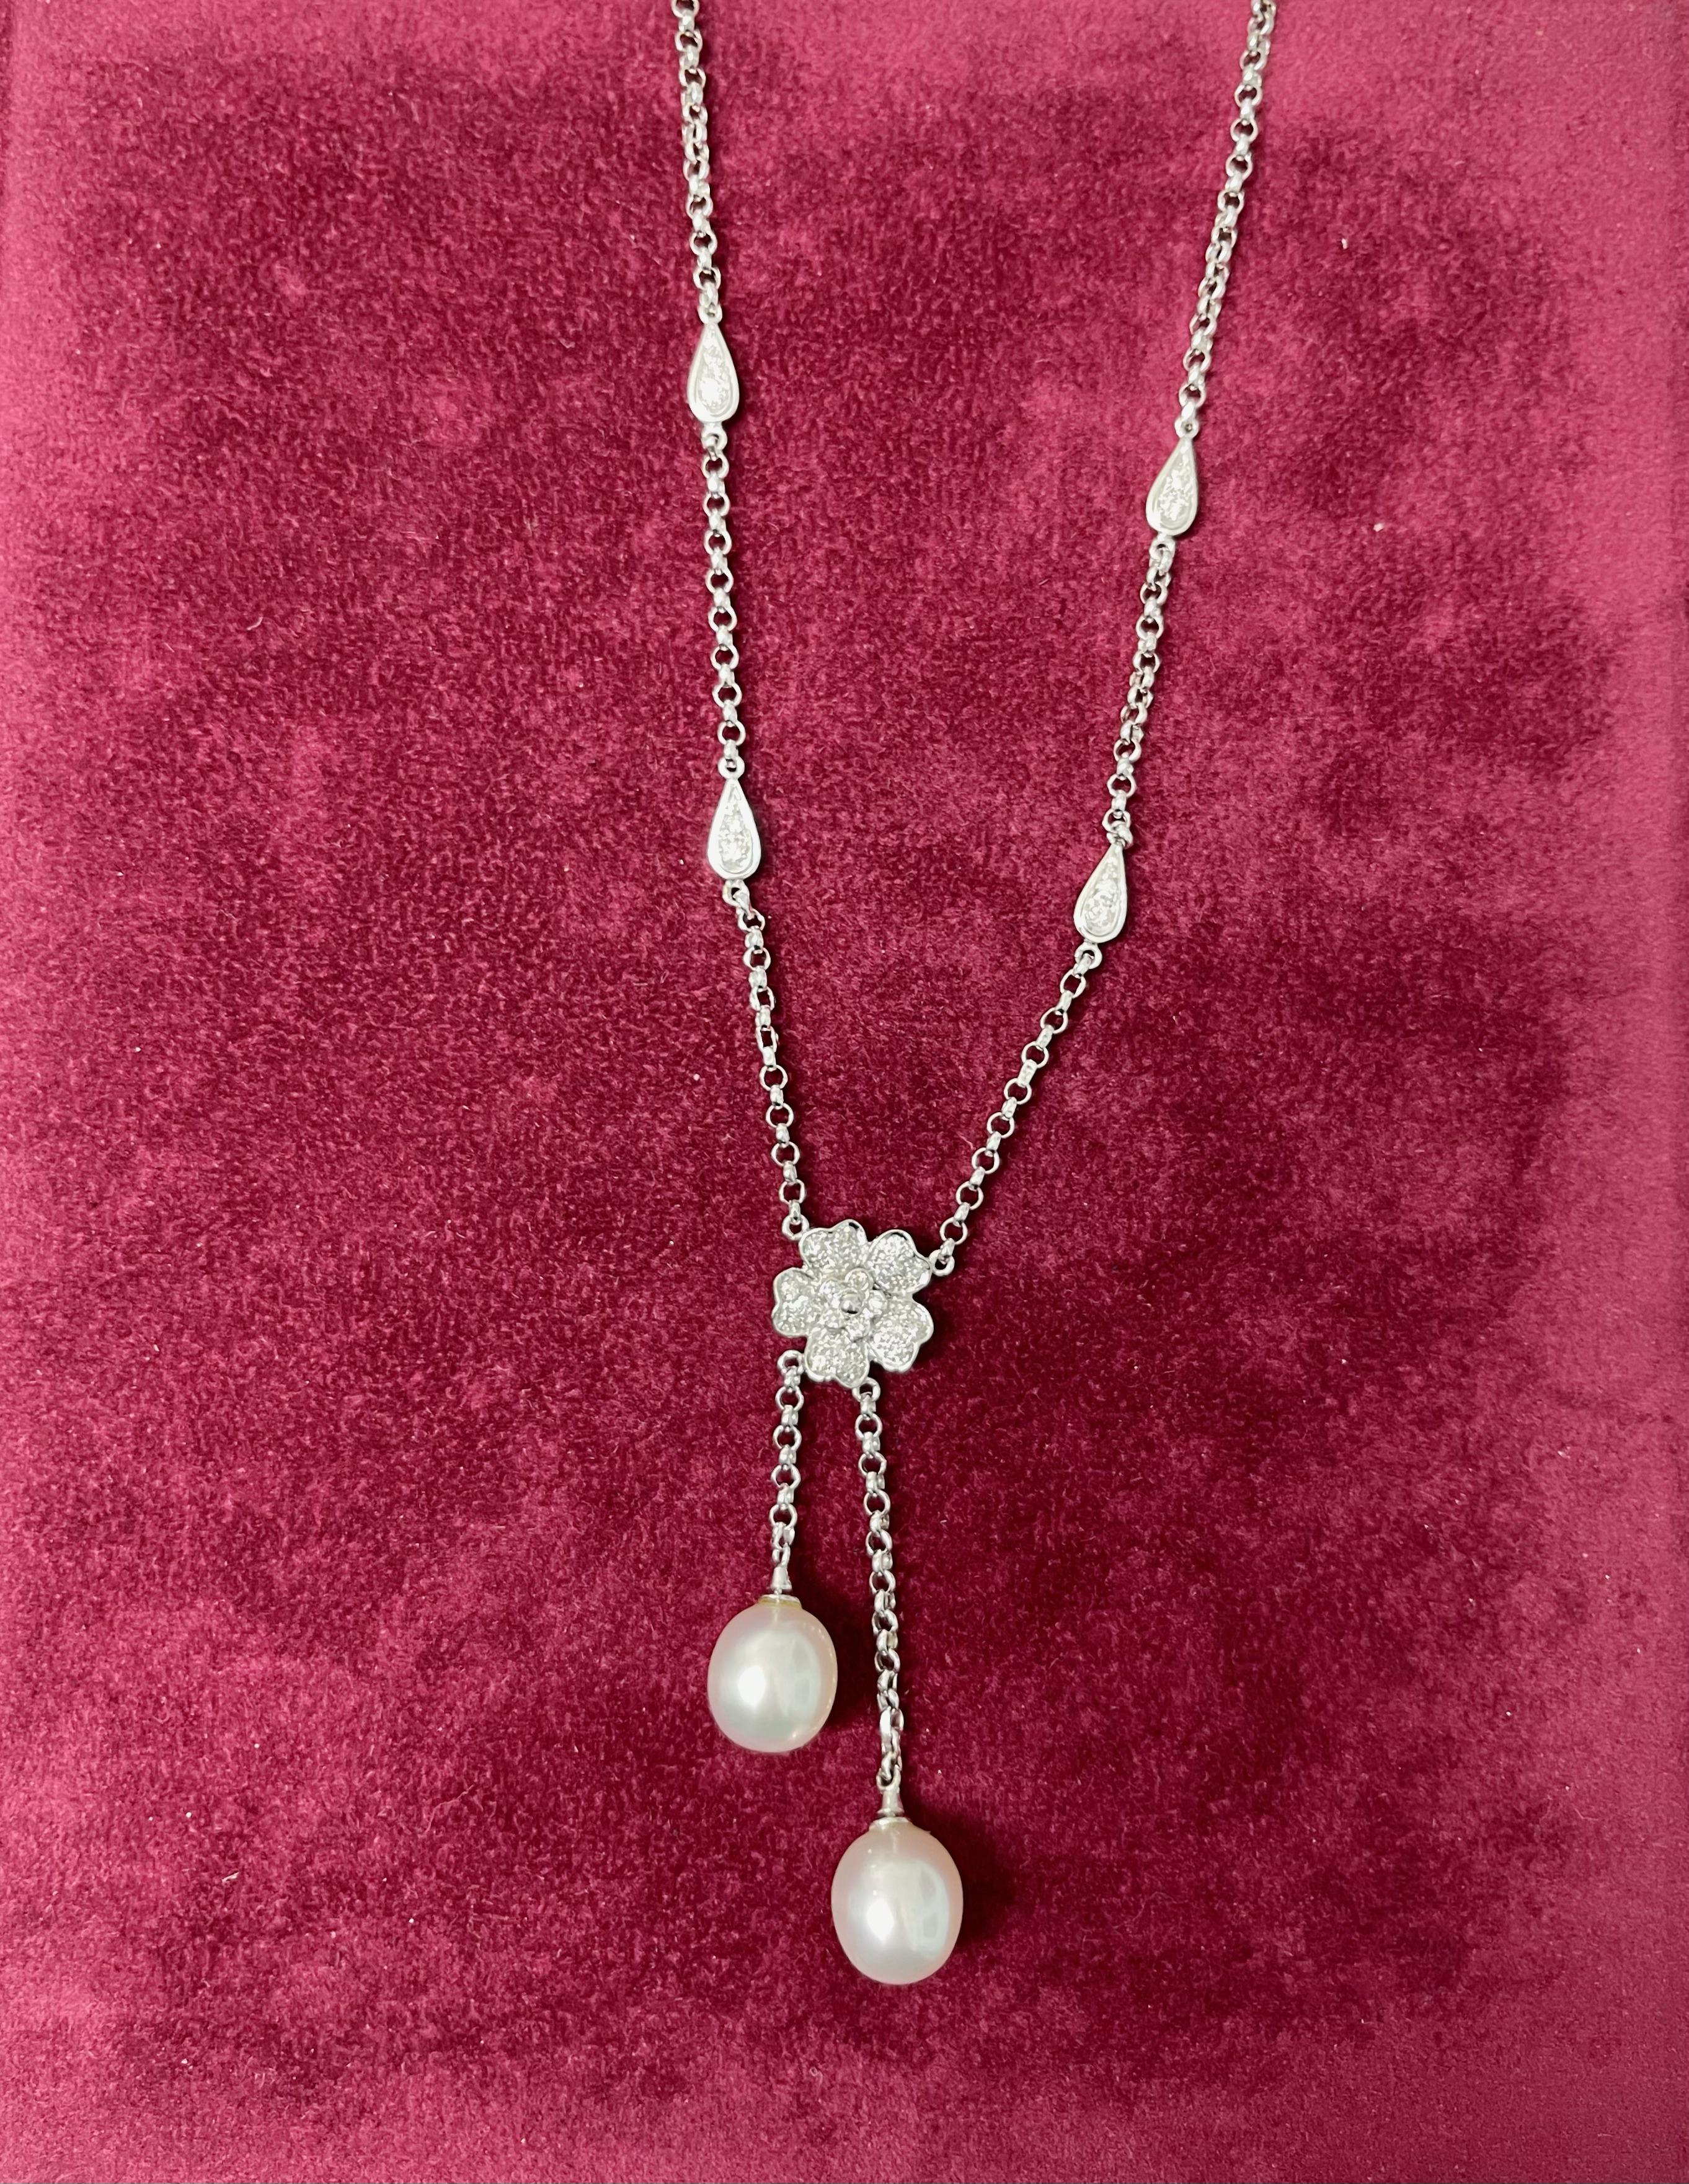 Wunderschönes und glänzendes Collier aus 18 Karat Weißgold, das in der Mitte mit einer von Diamanten bedeckten Blume und zwei weißen Perlenanhängern verziert ist.
Die Halskette ist ebenfalls mit vier Tropfen verziert, zwei auf der linken Seite und